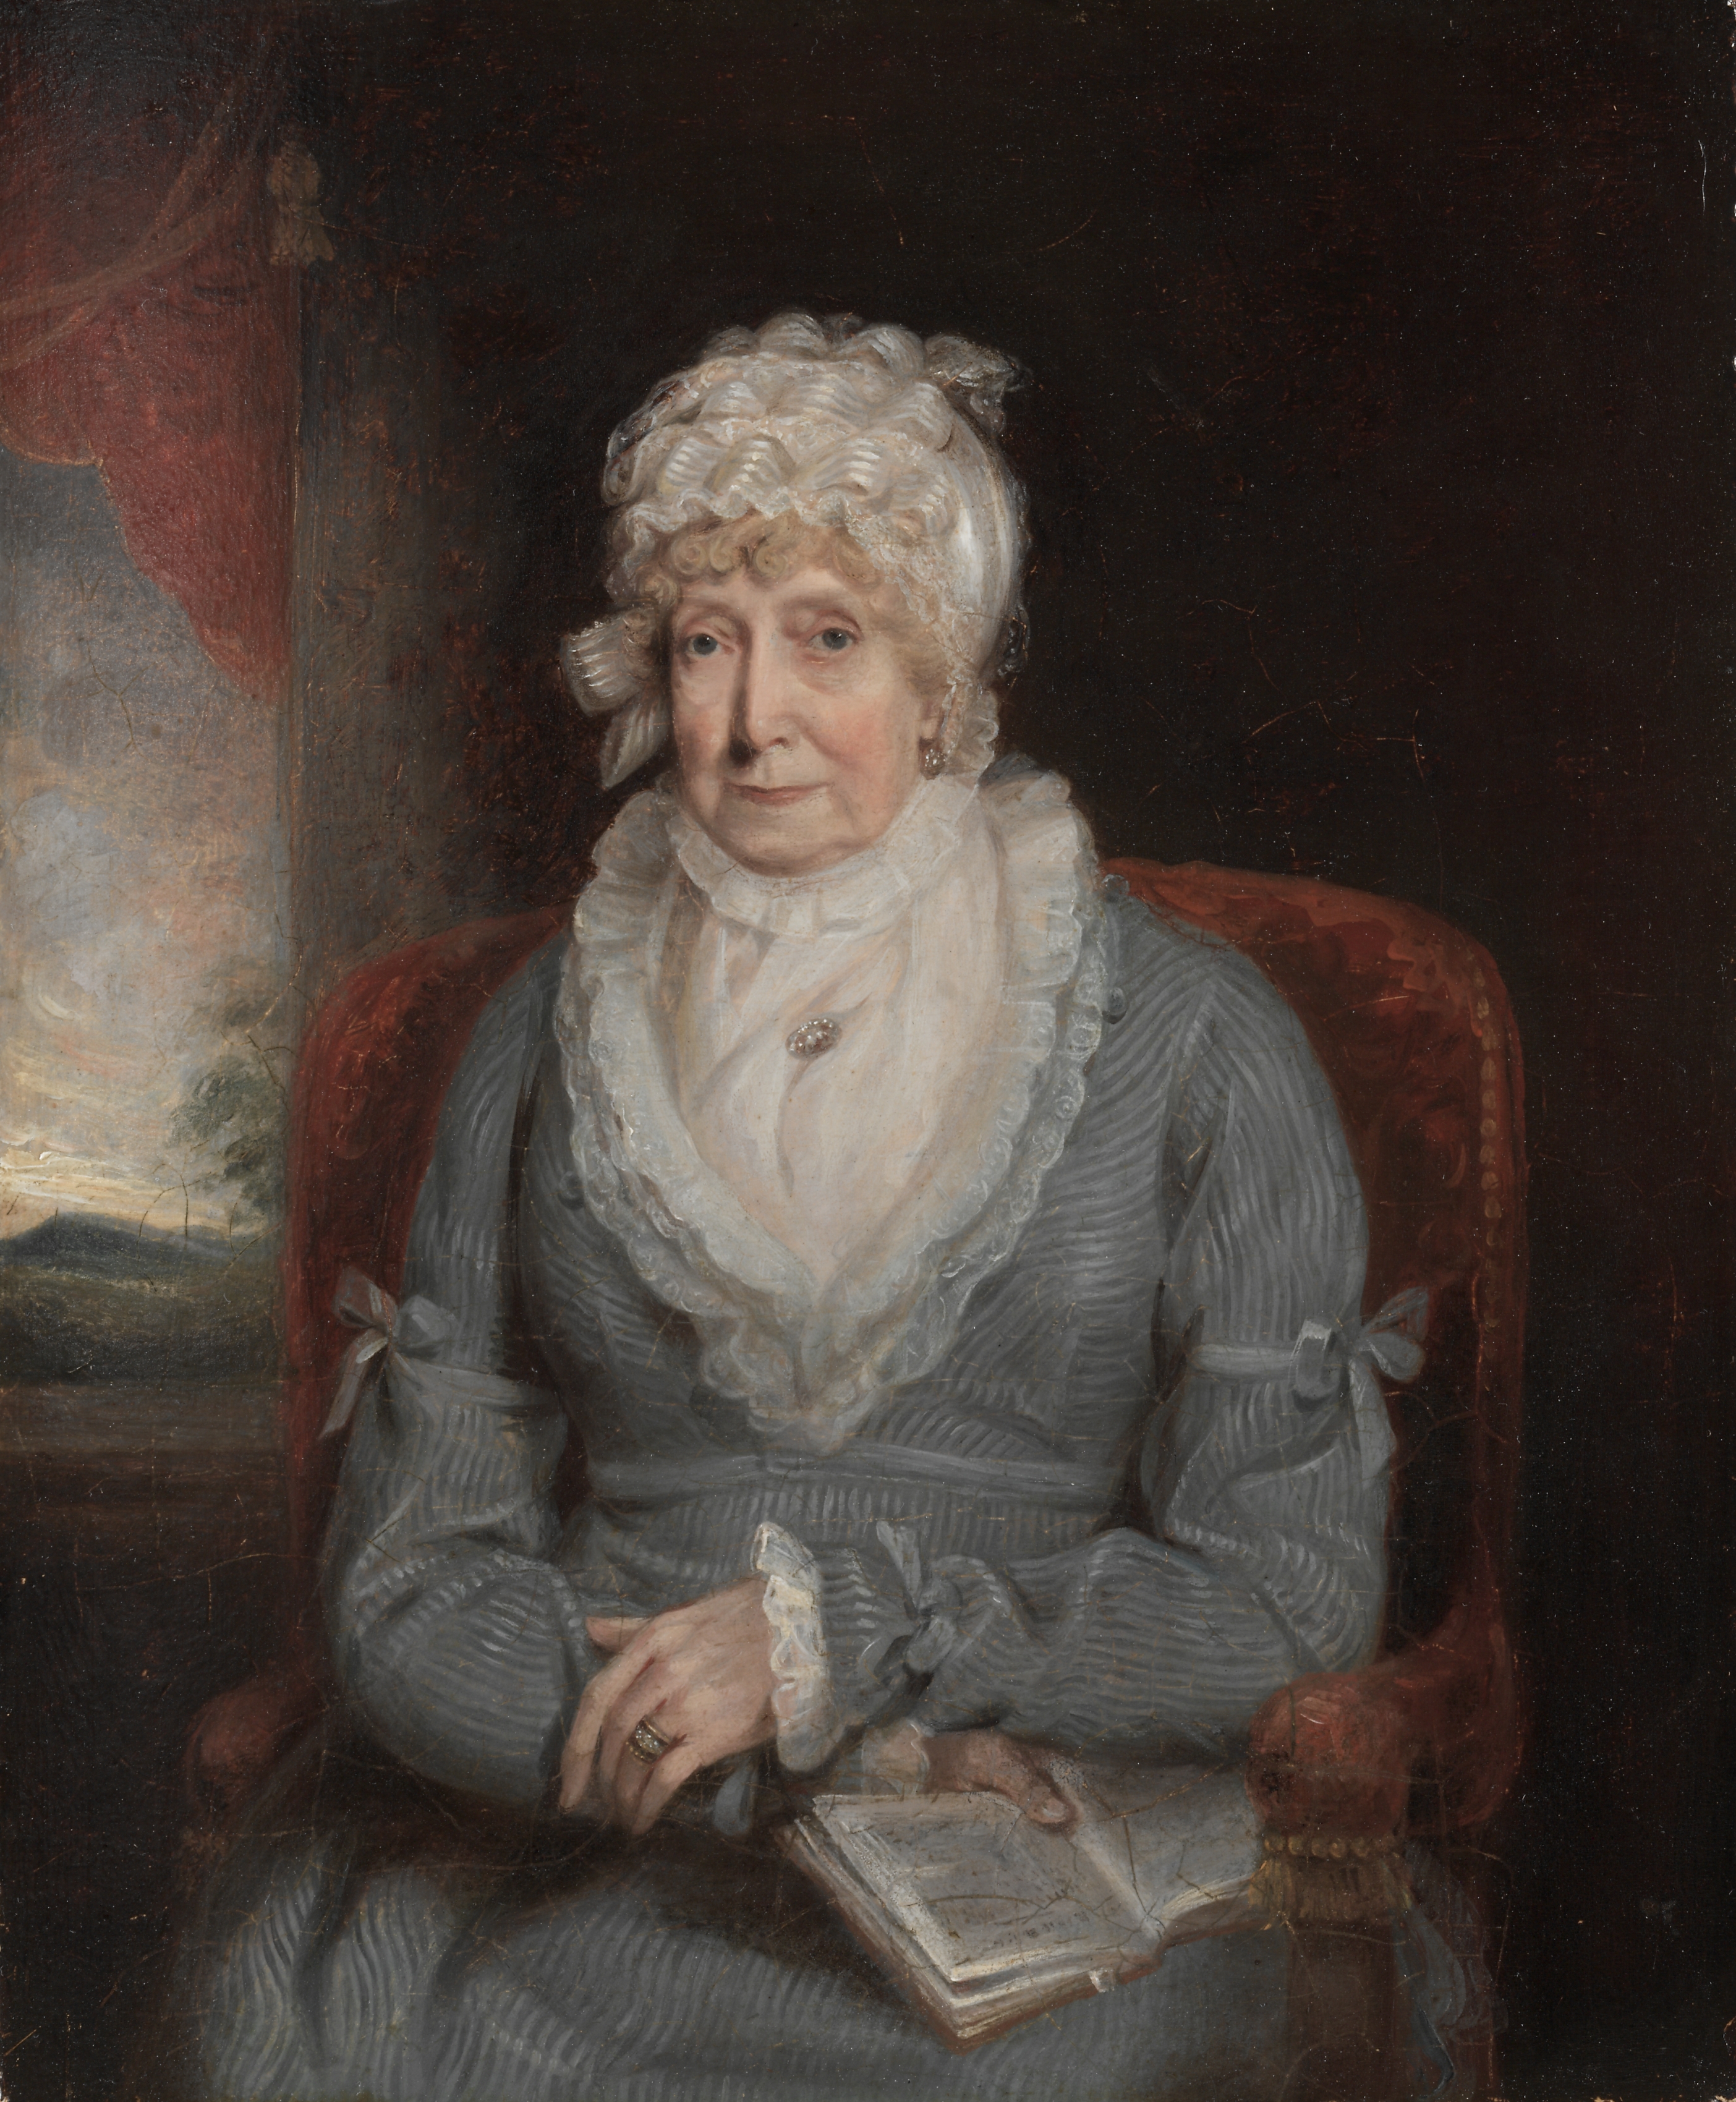 Portrait of a Woman (Mrs. Ann Hivlyn)